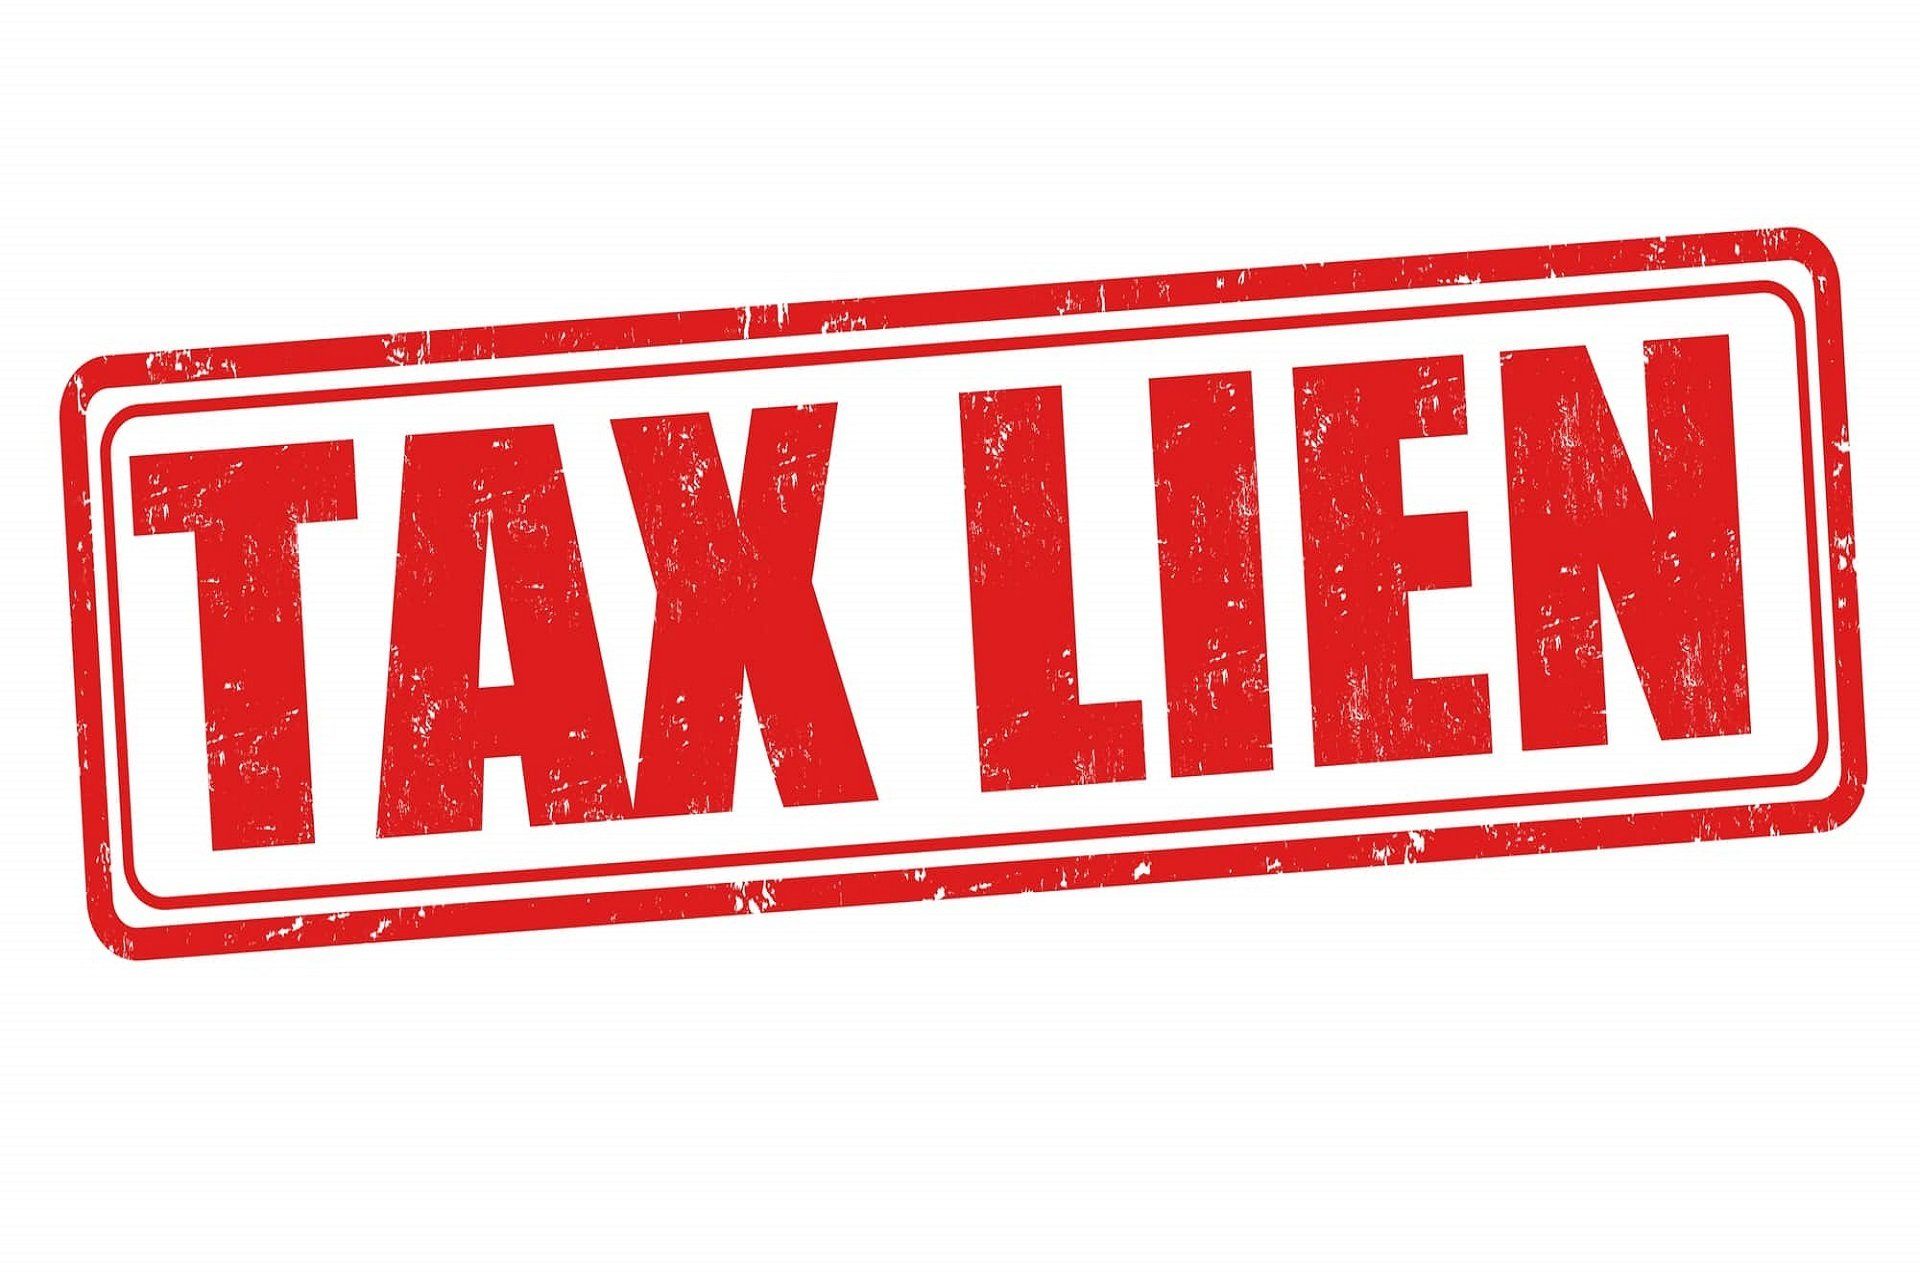 IRS Tax Lien